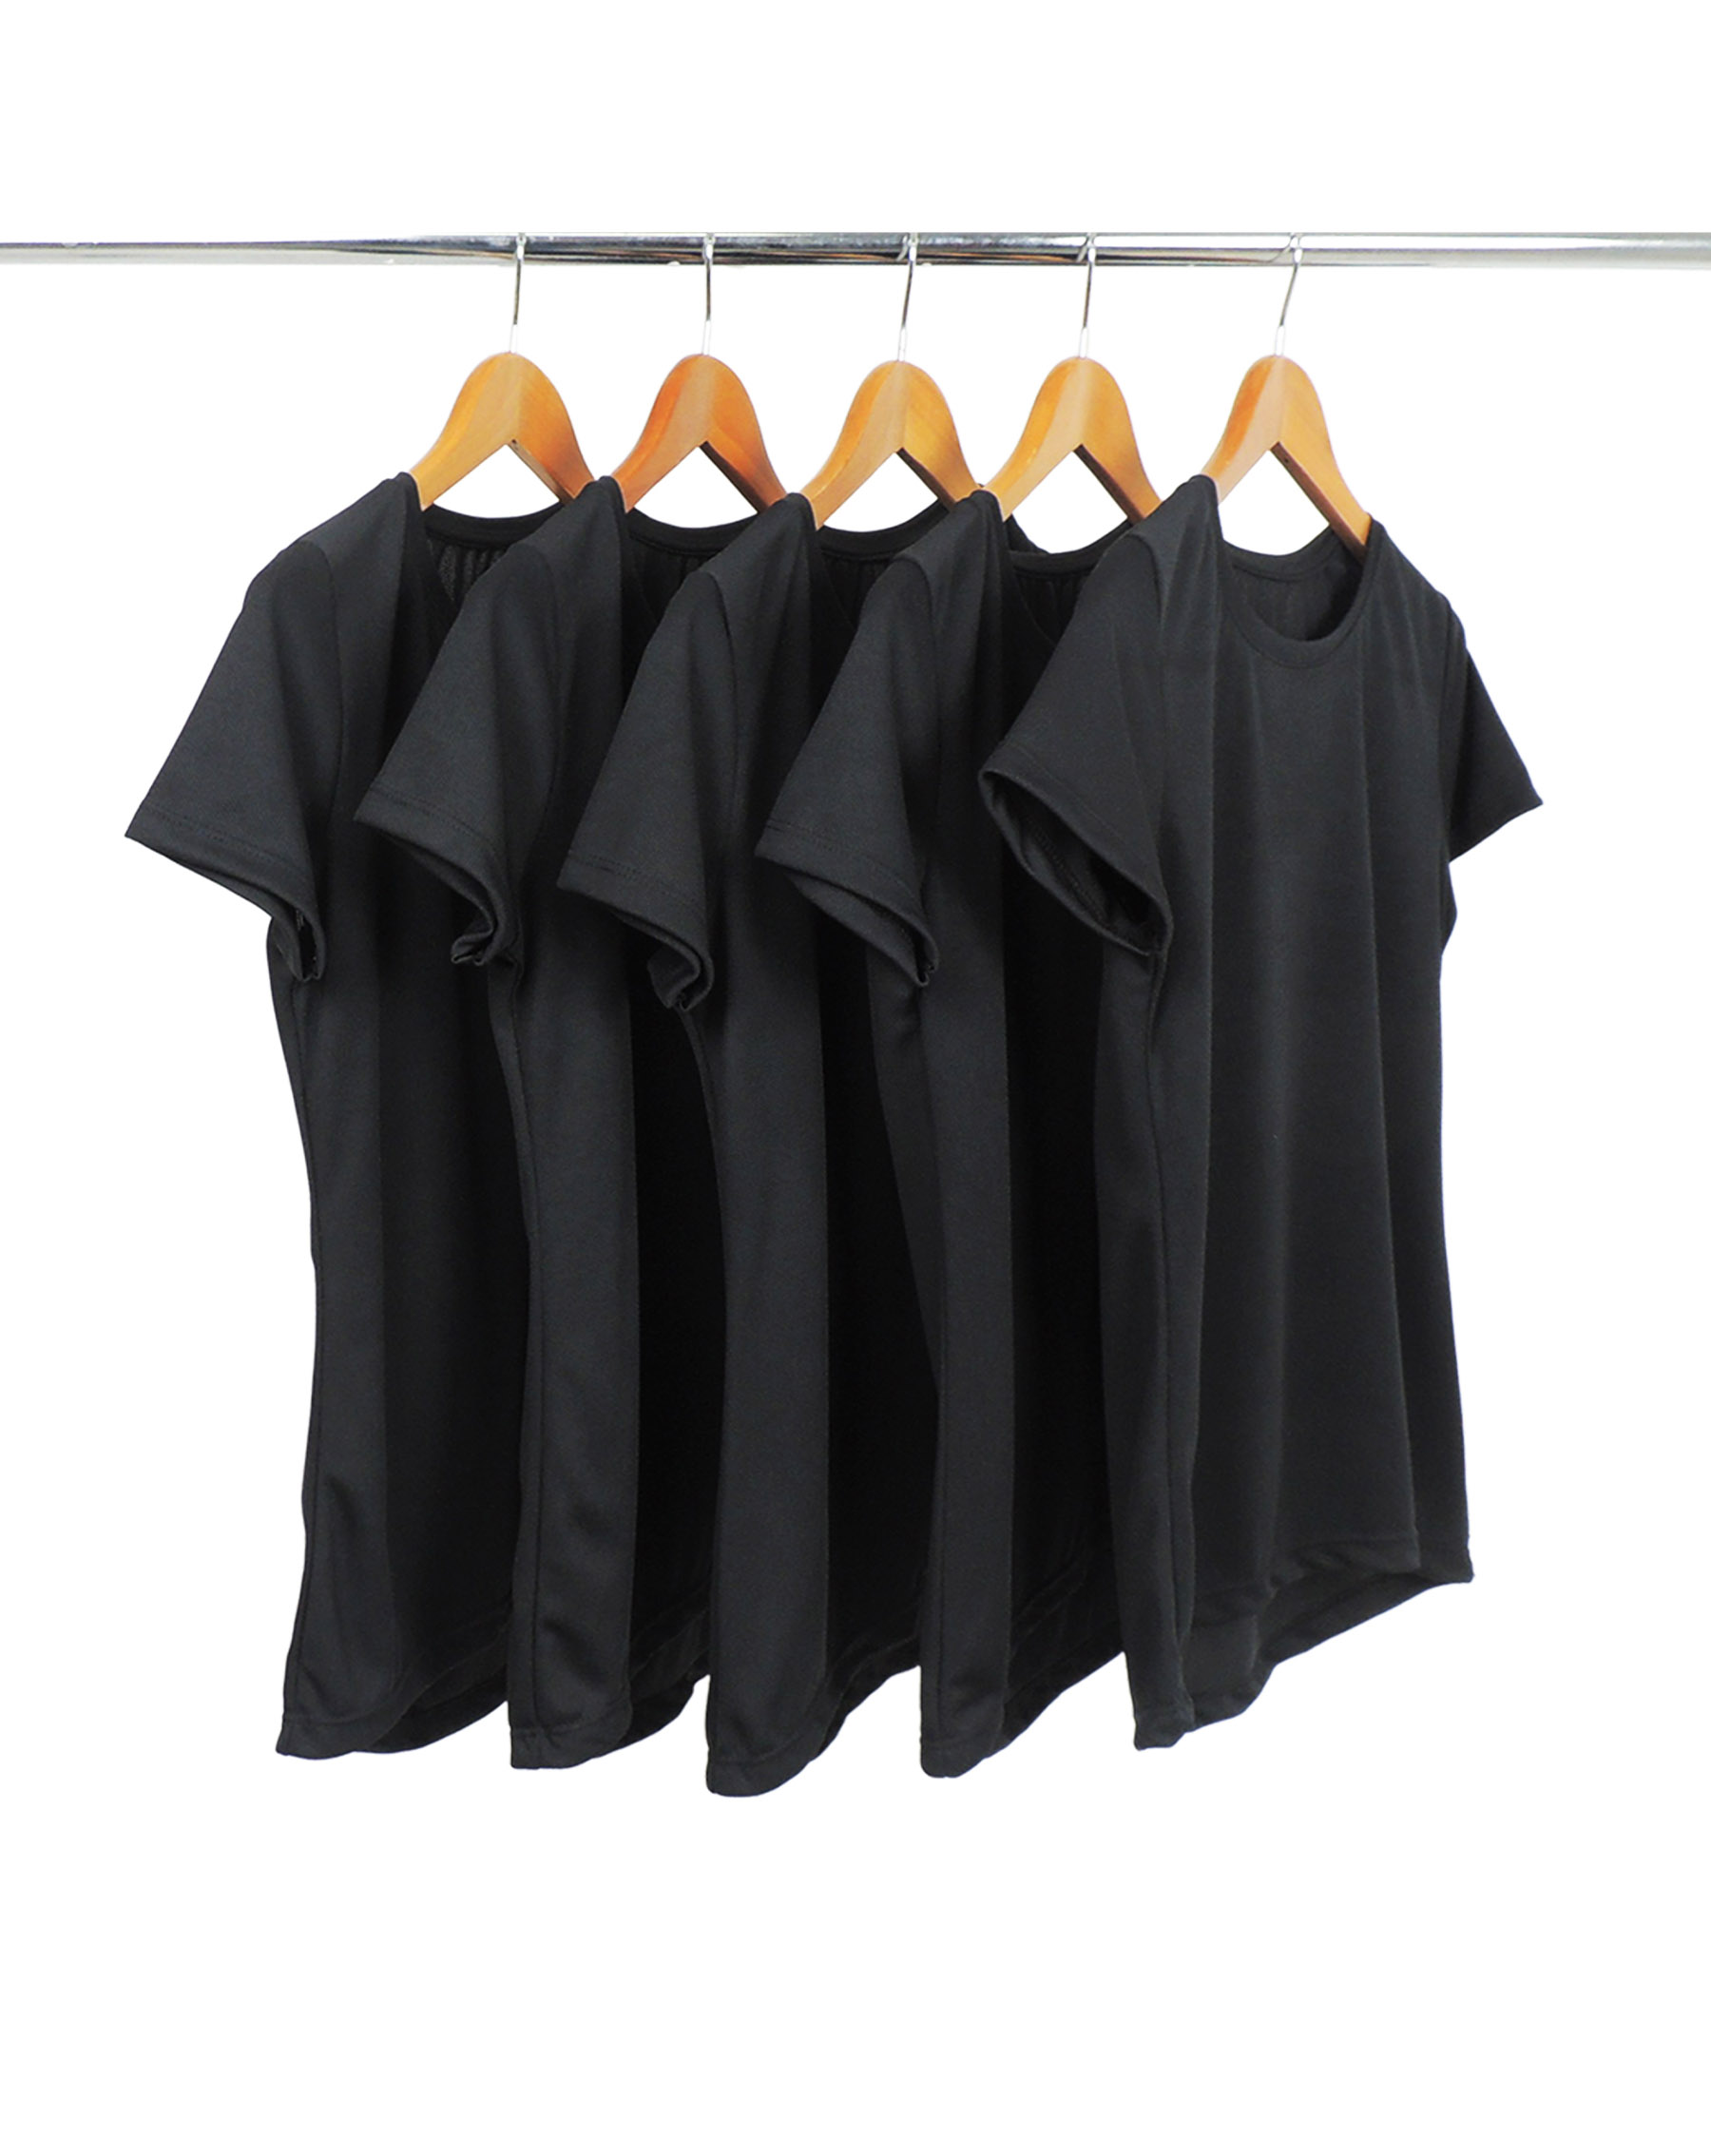 KIT 5 Camisetas Femininas Dry Fit Pretas Proteção UV 30+